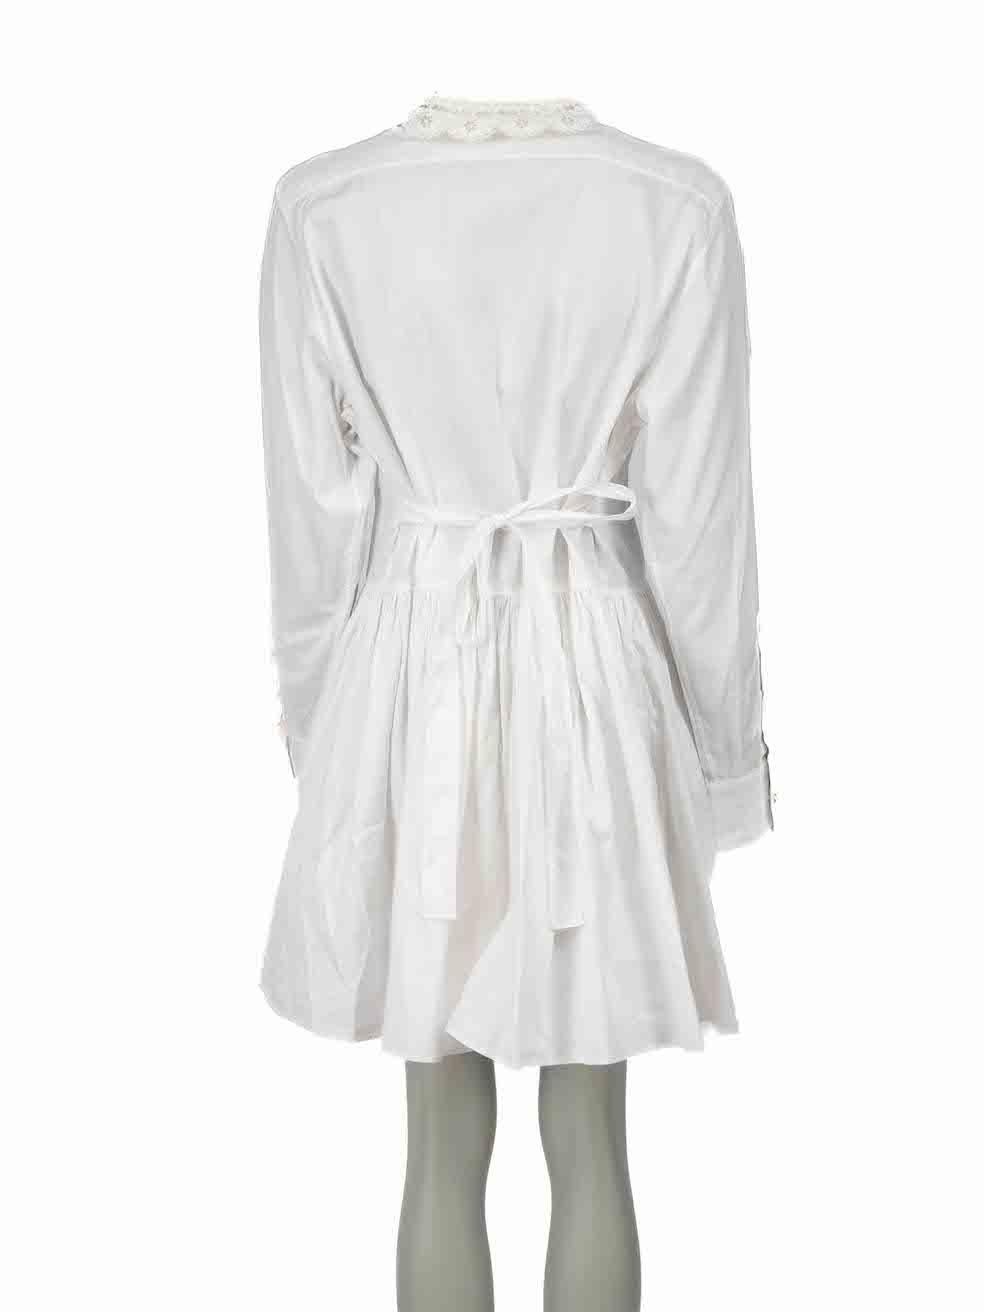 Miu Miu White Bib Accent Mini Smock Dress Size M In Good Condition For Sale In London, GB